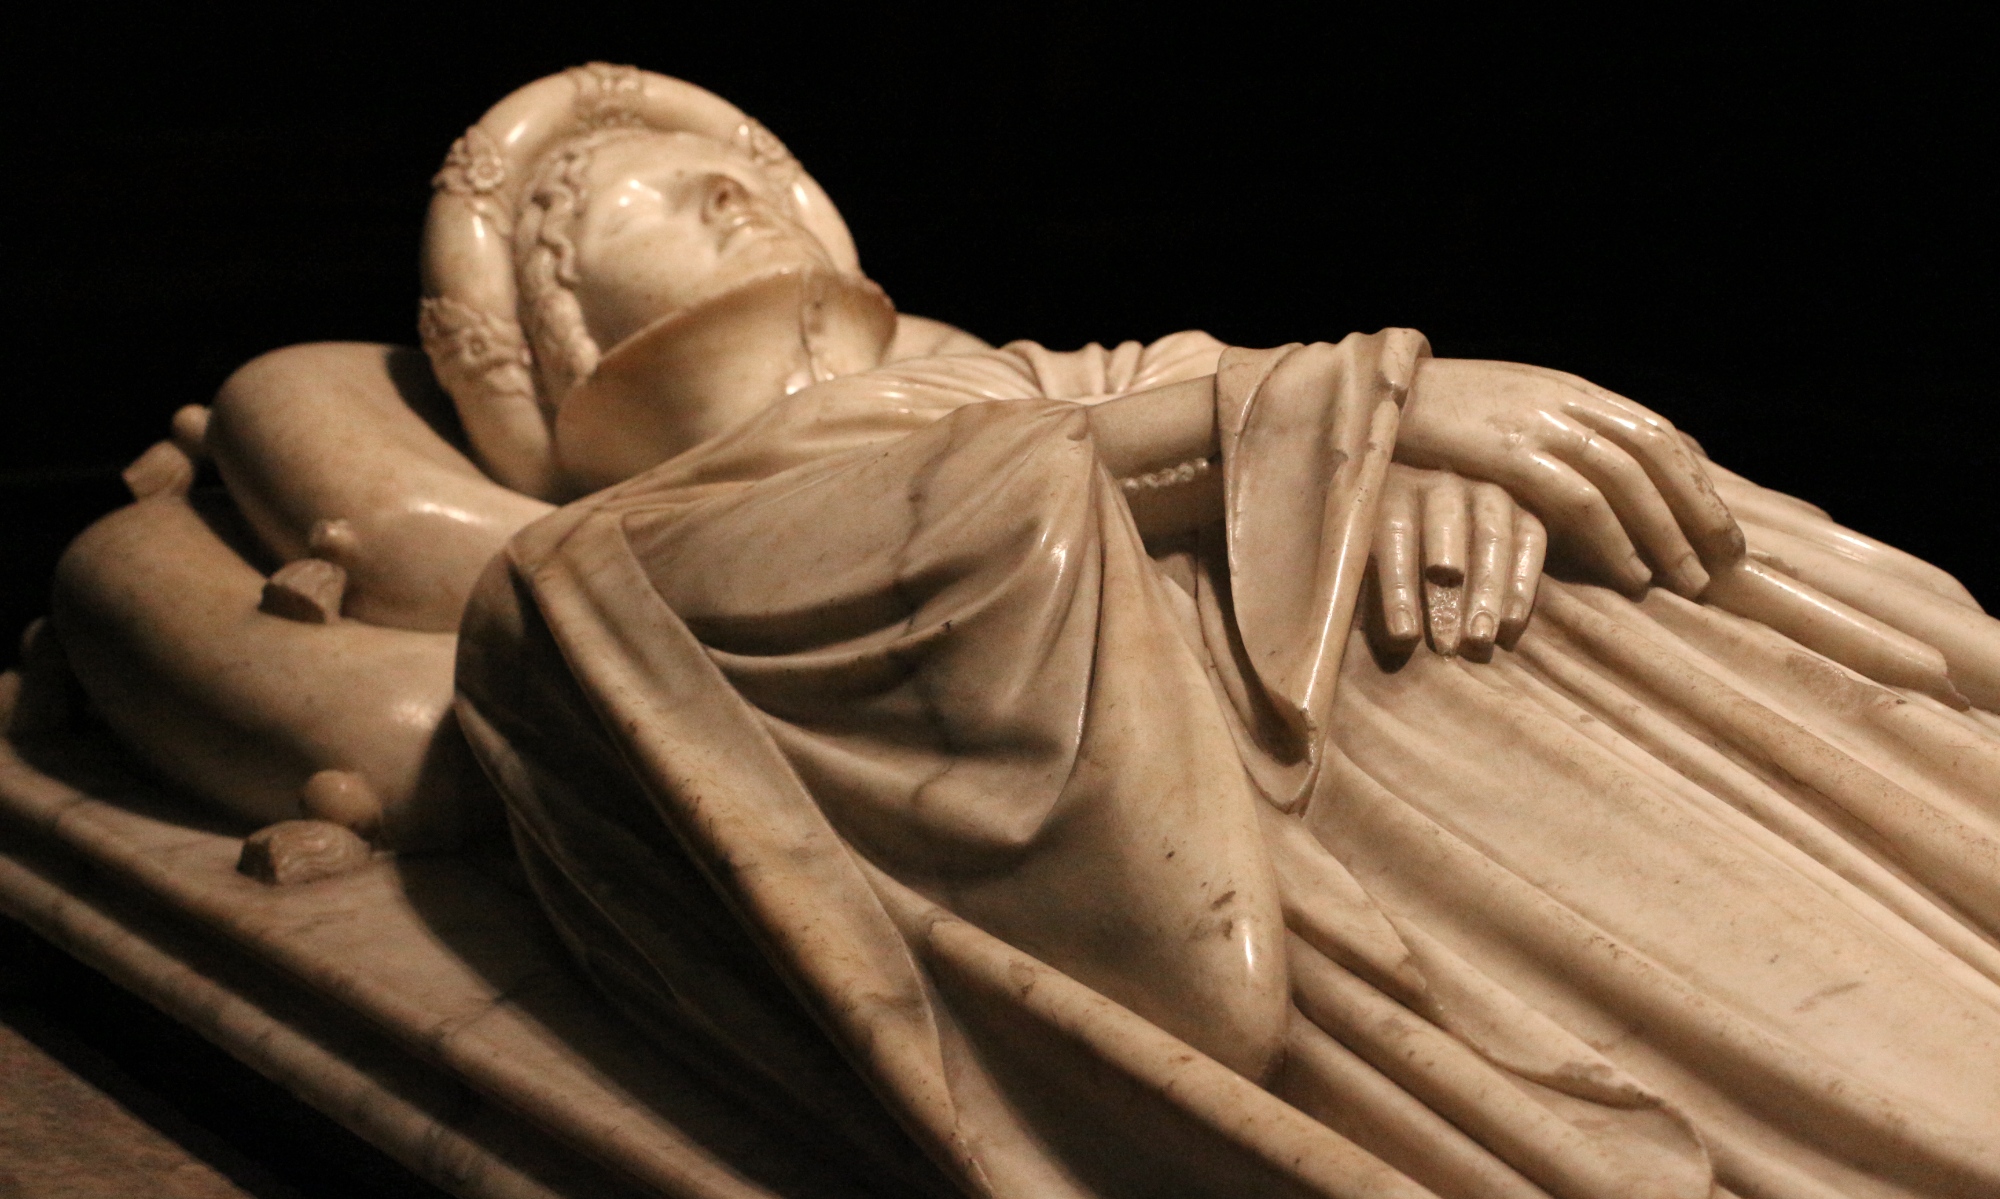 La statua di Ilaria del Carretto